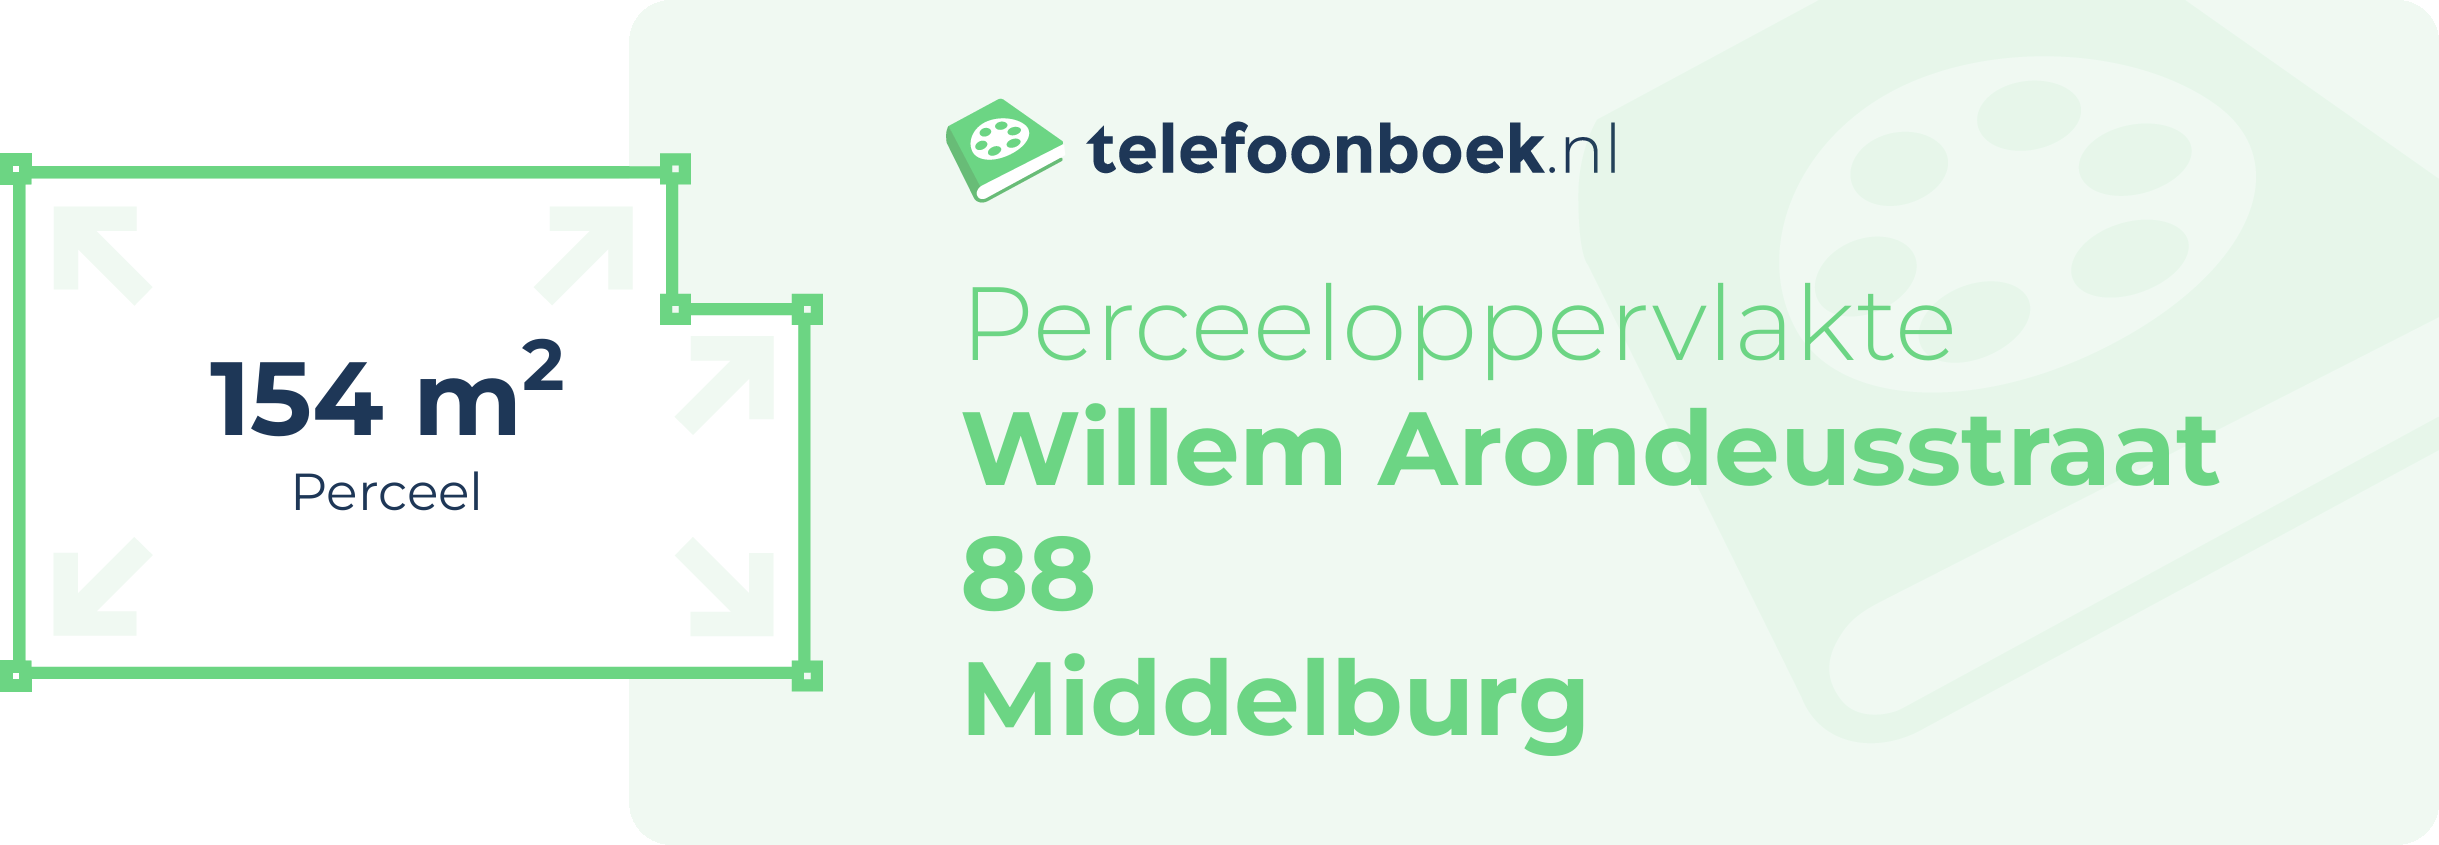 Perceeloppervlakte Willem Arondeusstraat 88 Middelburg